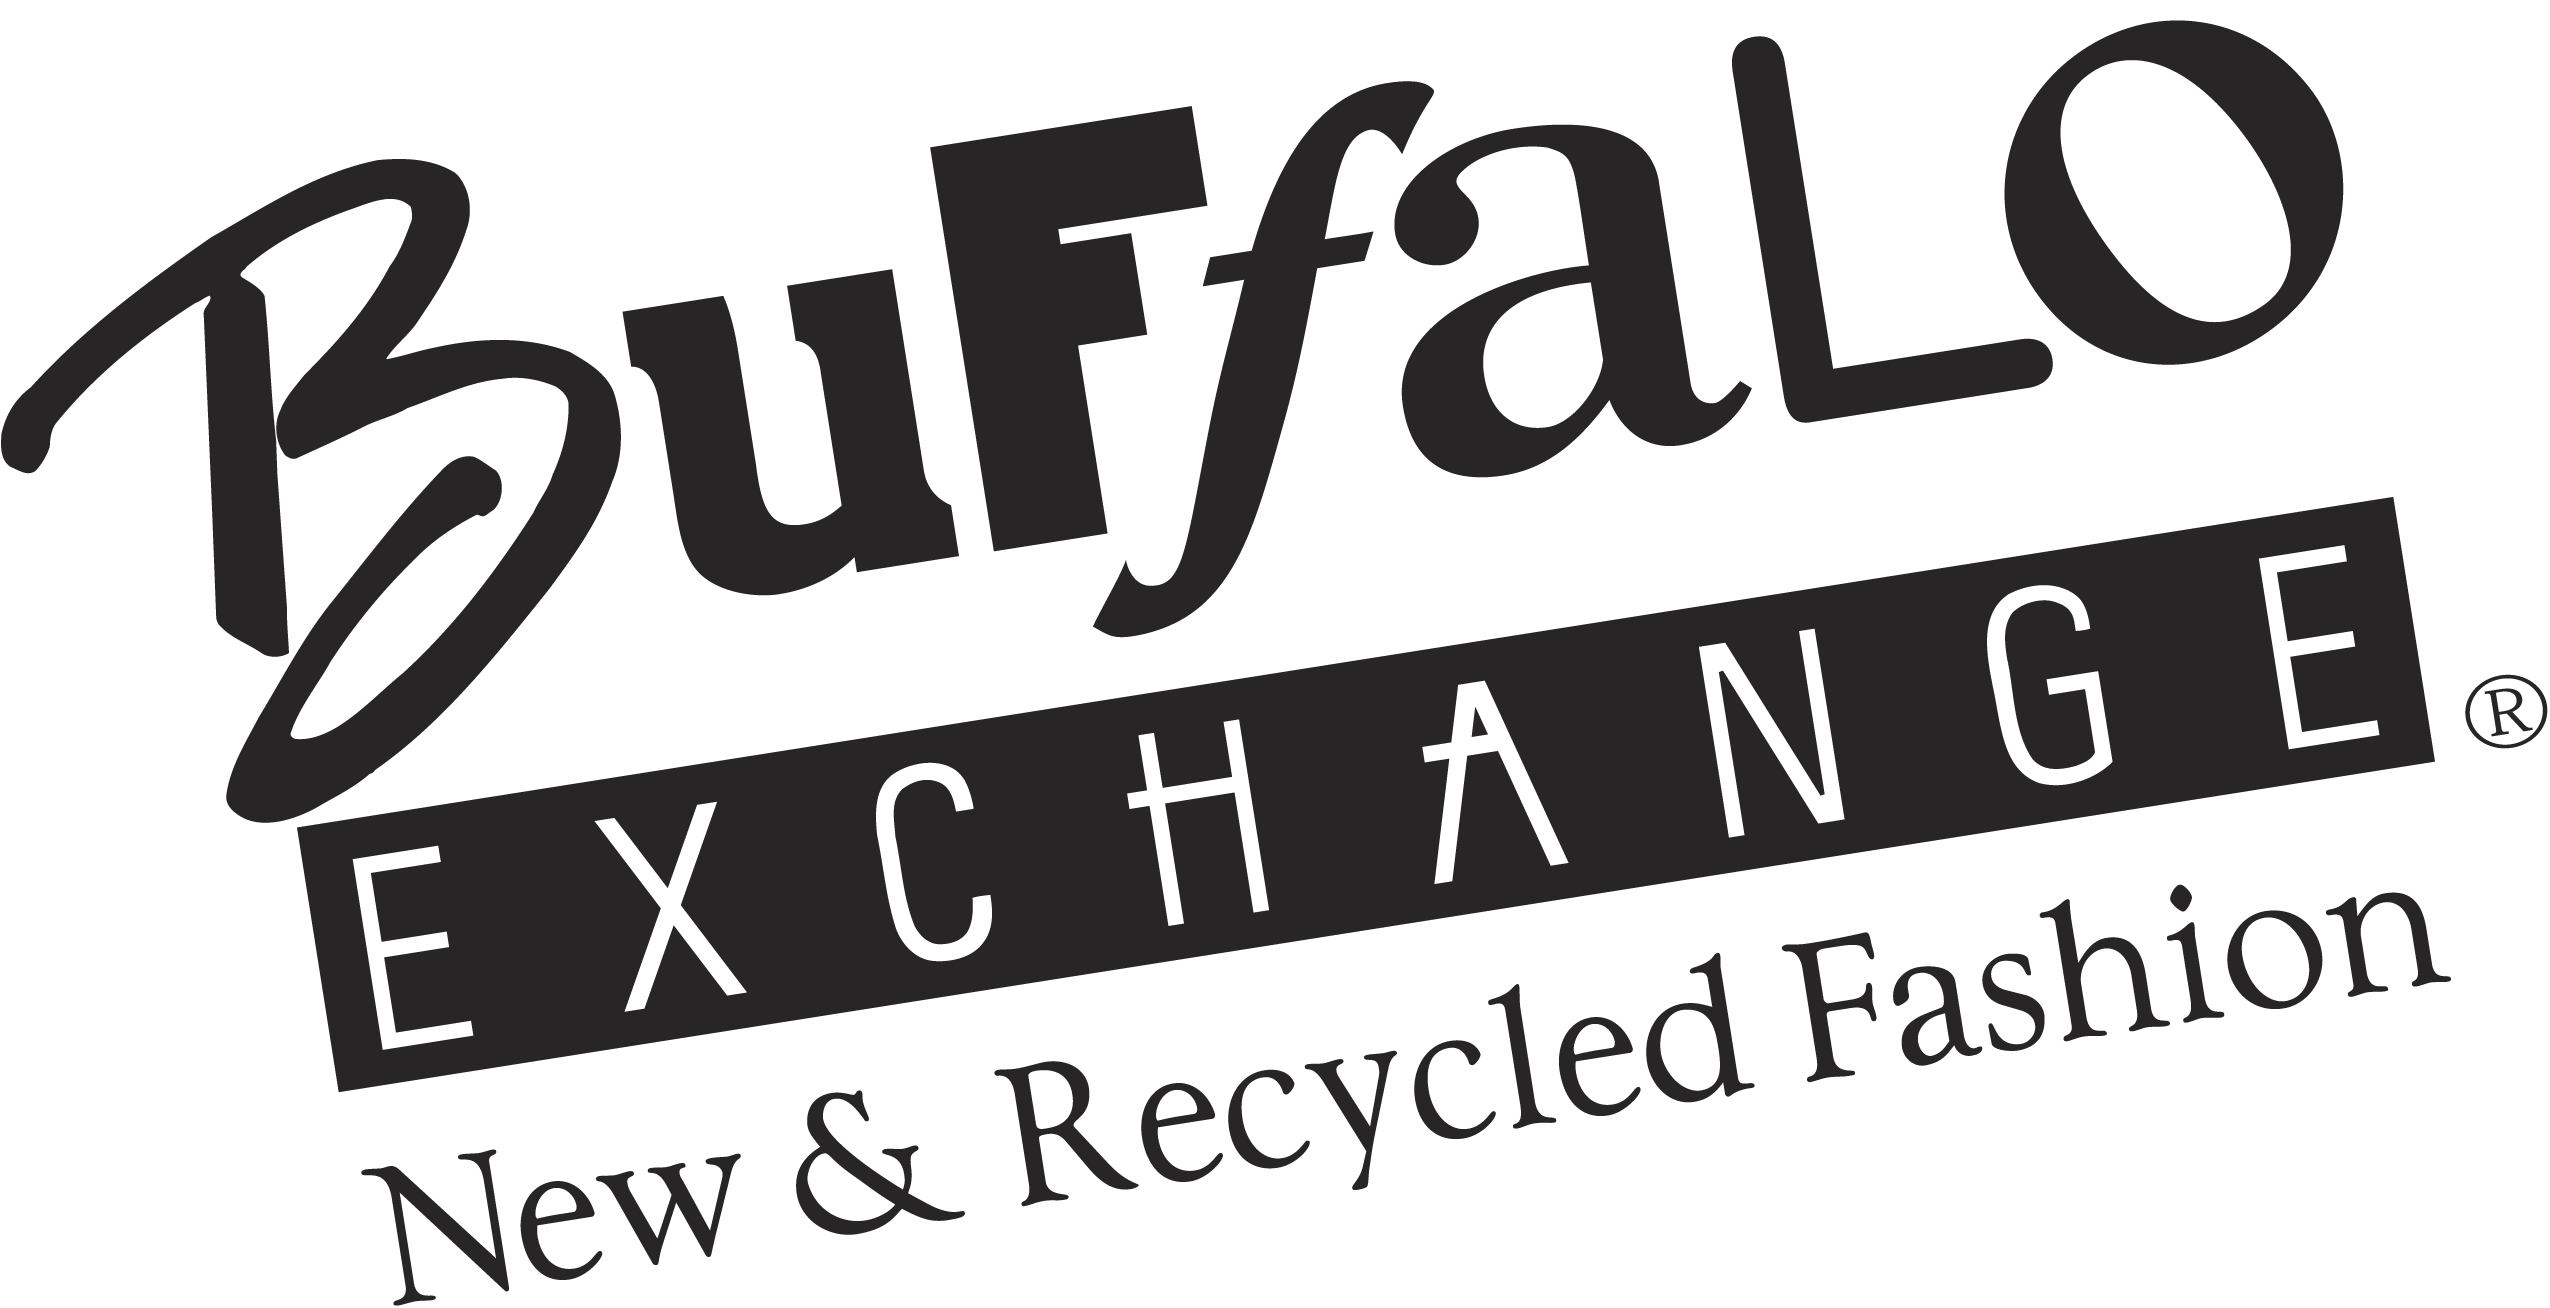 buffaloexchange logo